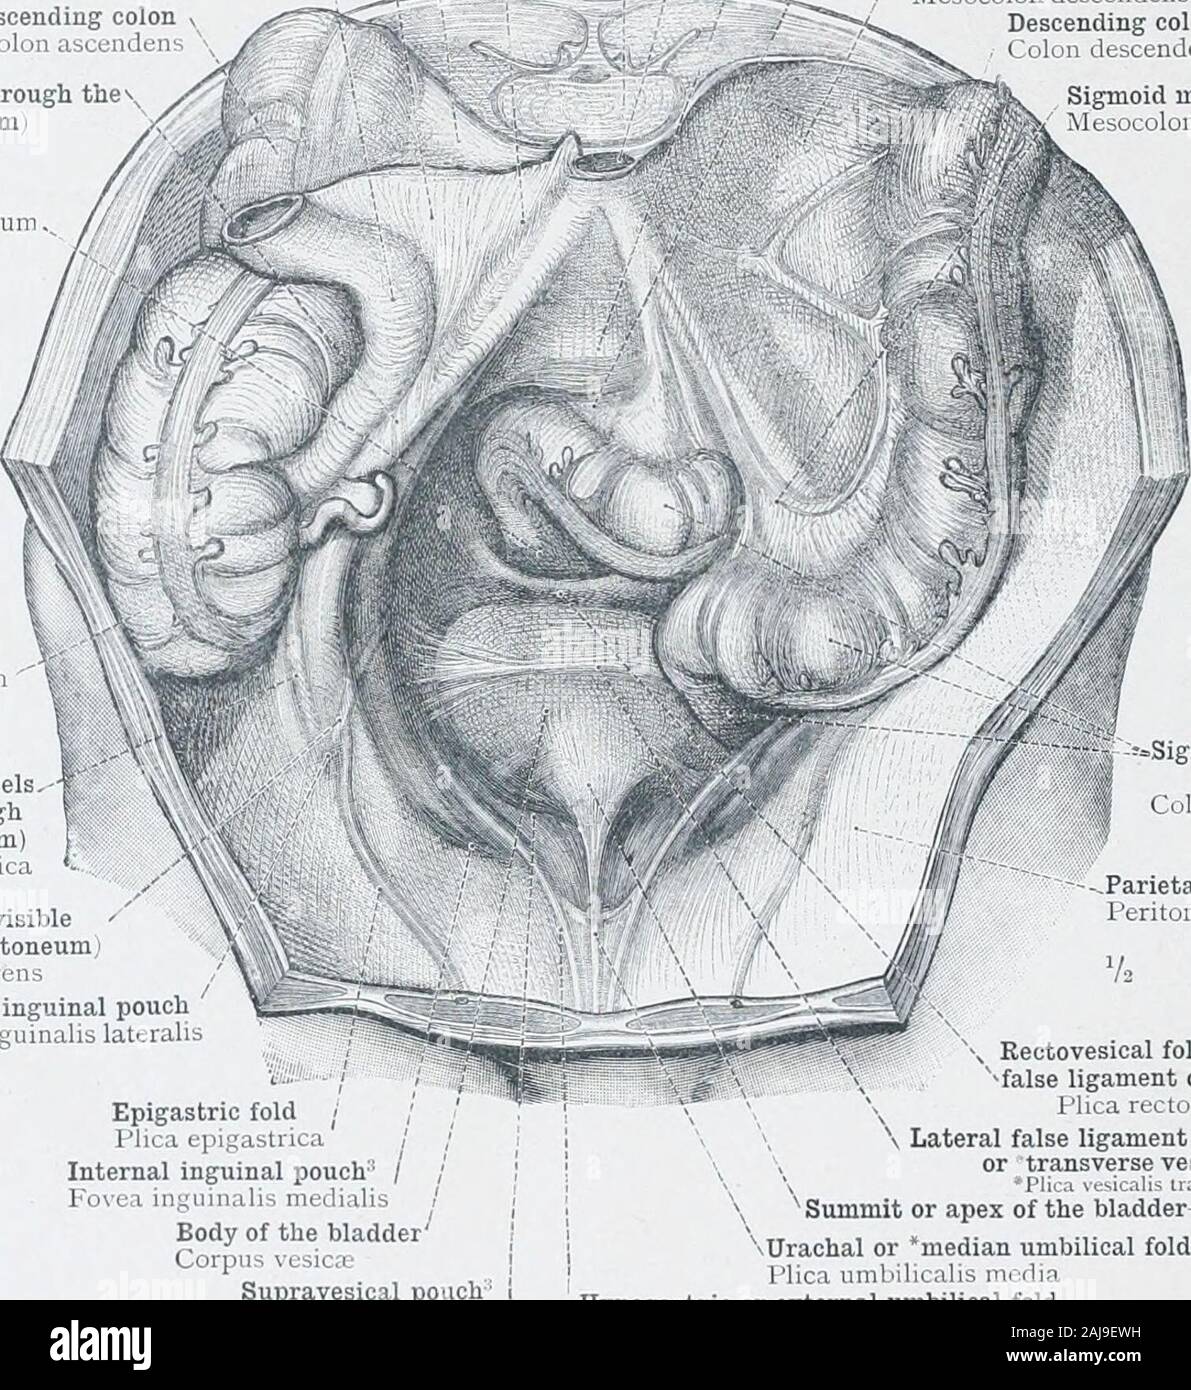 Un atlas de l'anatomie humaine pour les étudiants et les médecins des  couches . ligamentof large l'utérus avec le péritoine pariétal du plancher  pelvien est vu,aussi le reflet du péritoine viscéral couvrant